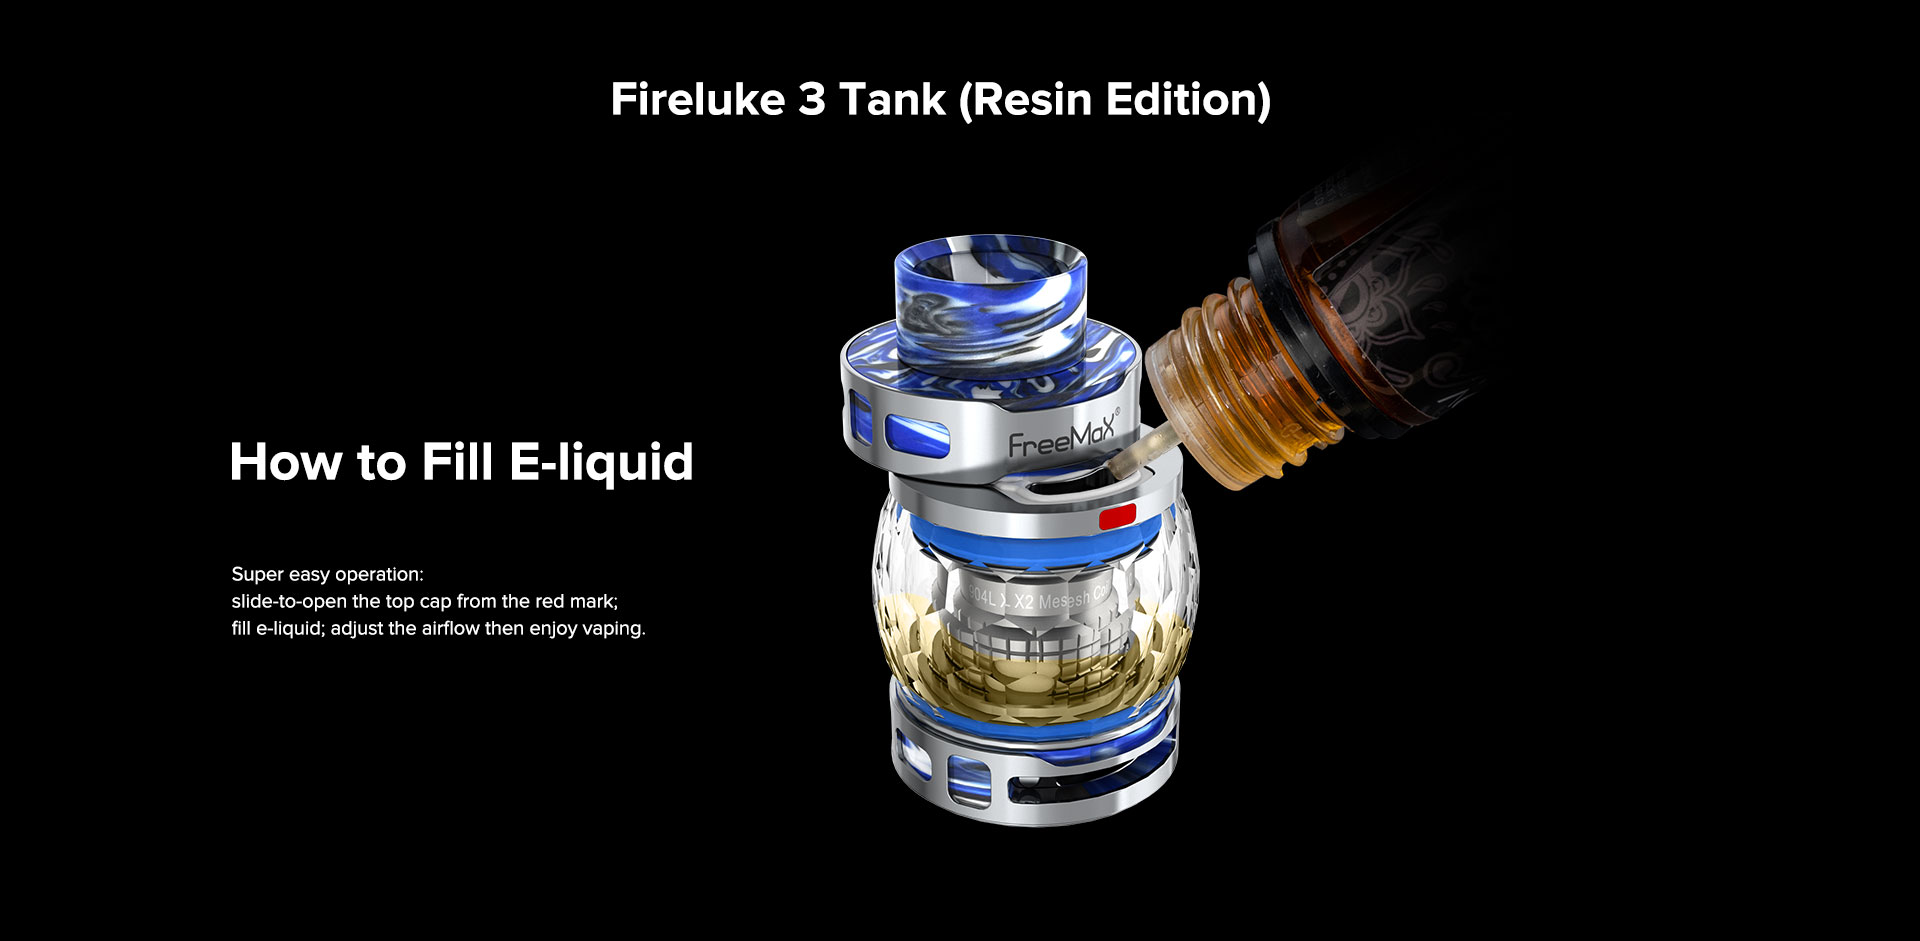 FreeMax Fireluke 3 Sub Ohm Tank-filling system